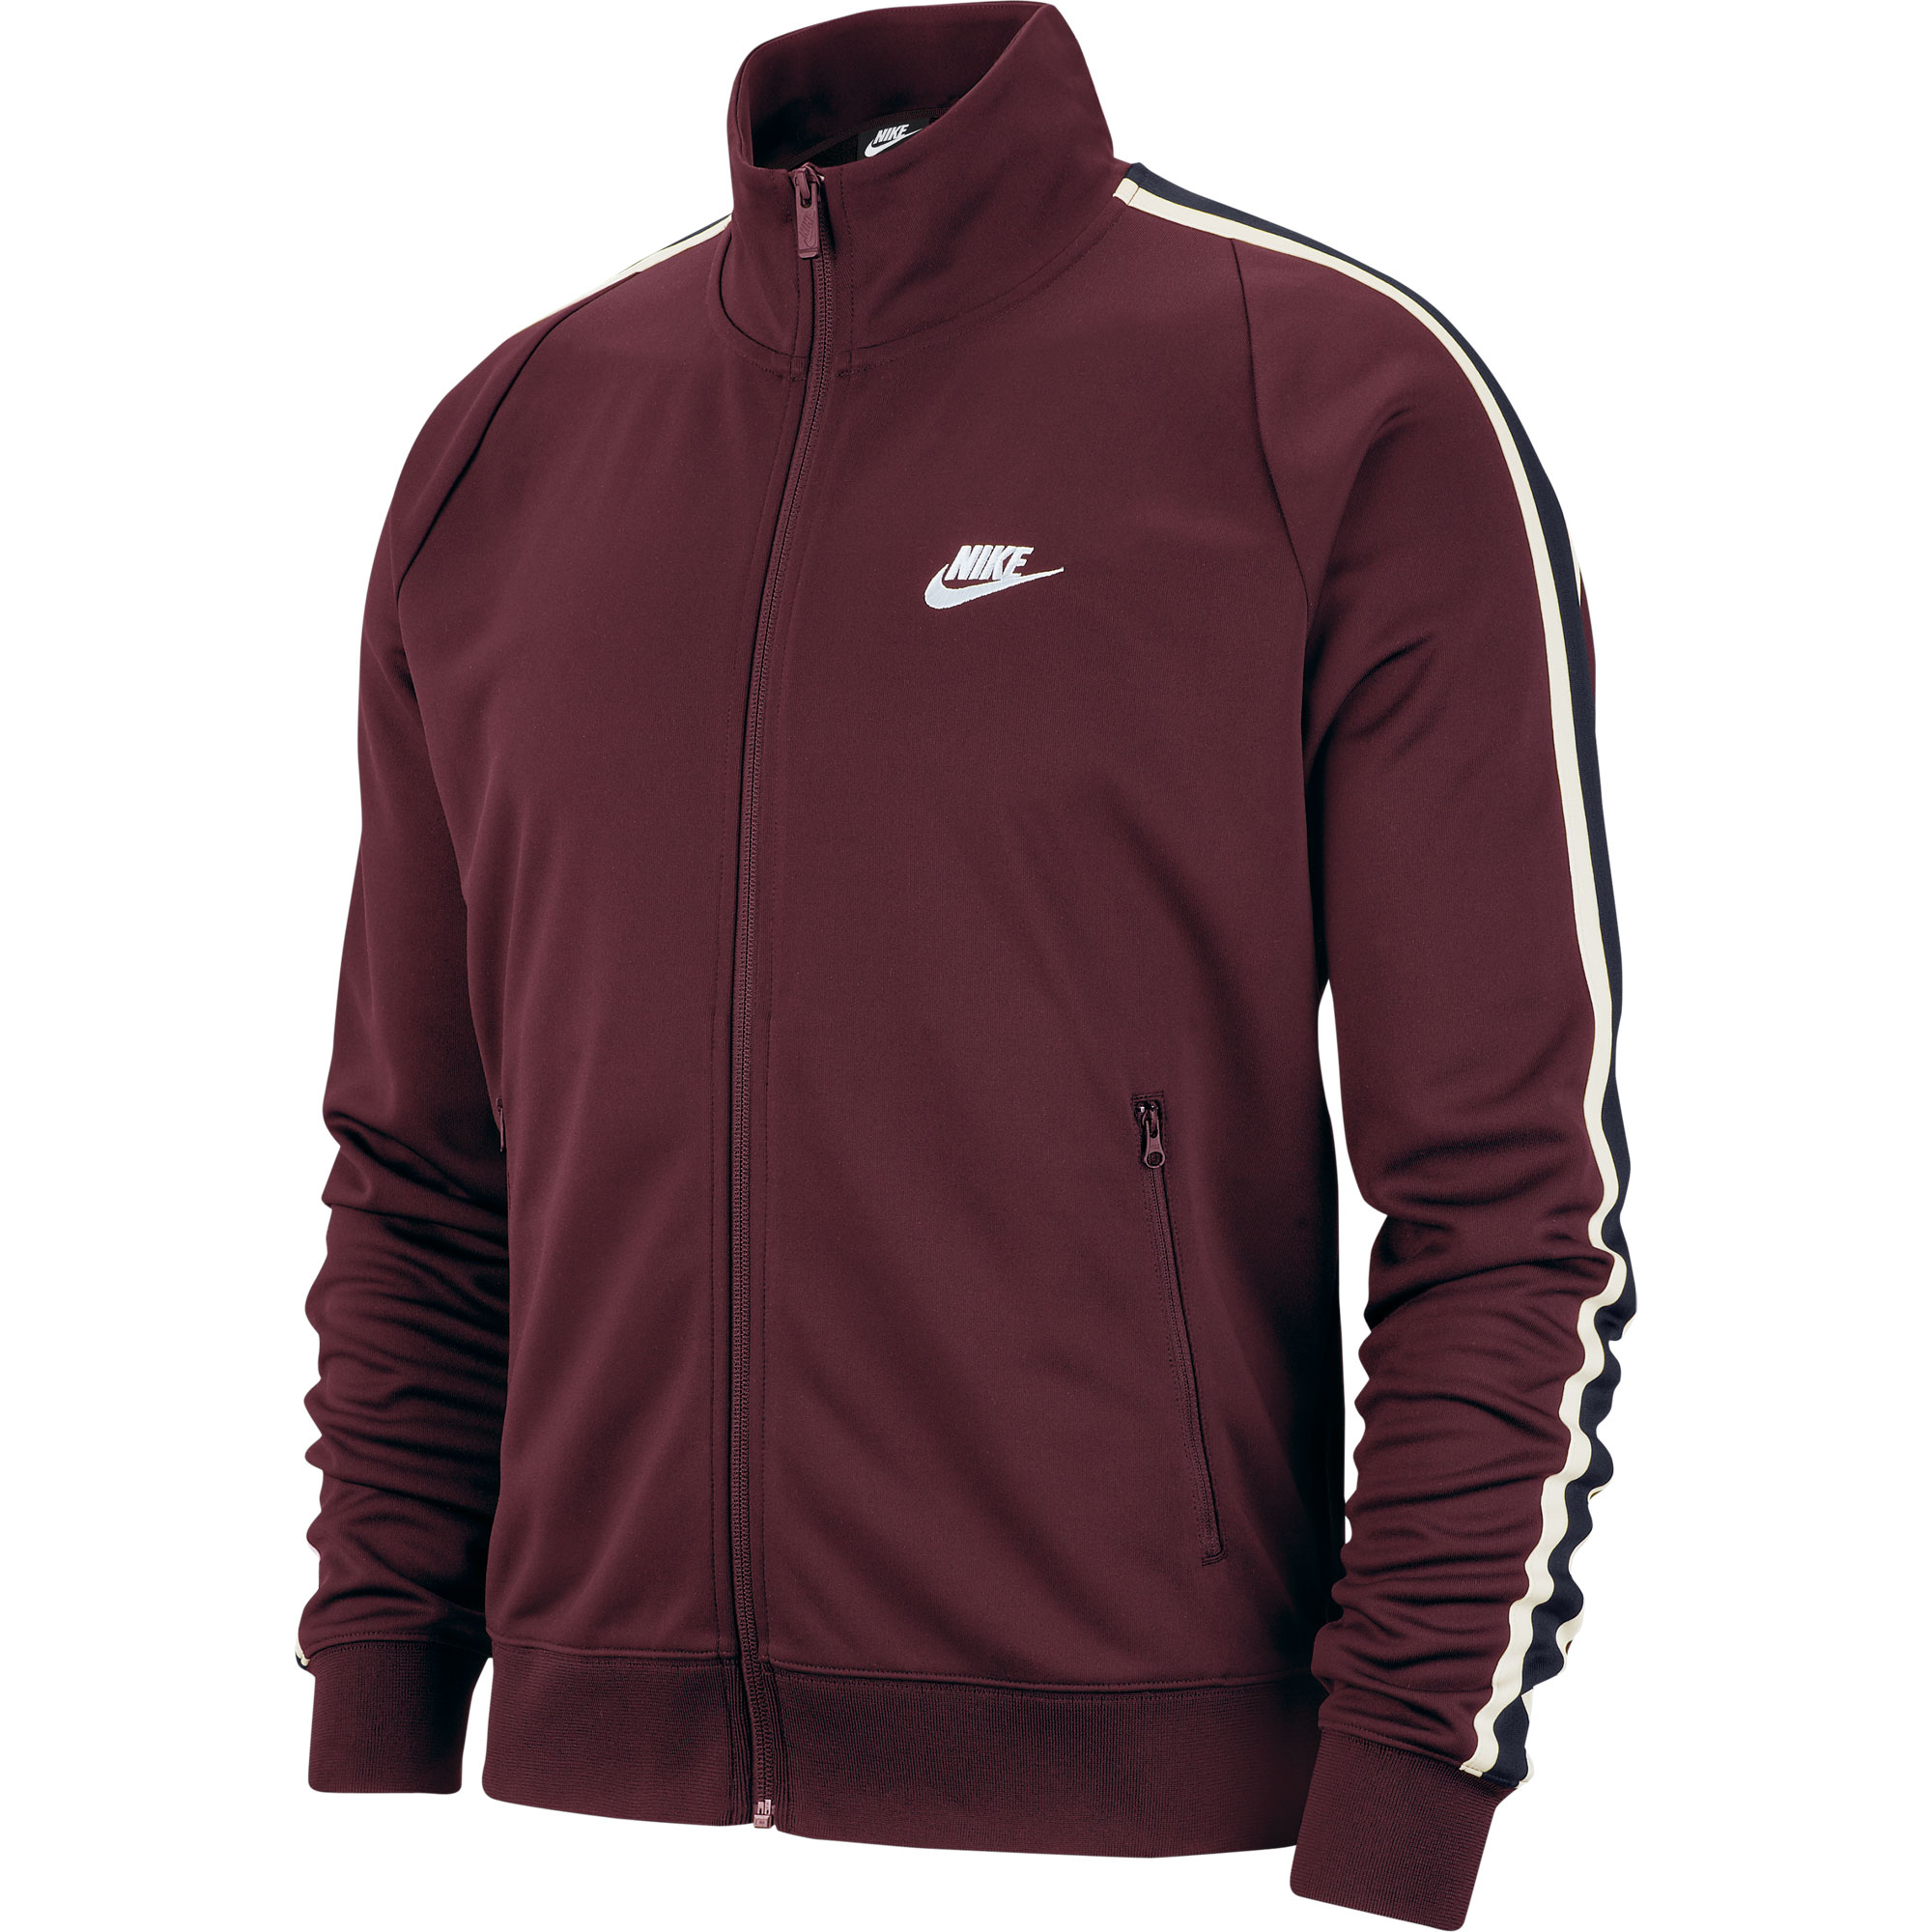 Nike Sportswear N98 Trainingsjack Bordeaux Rood